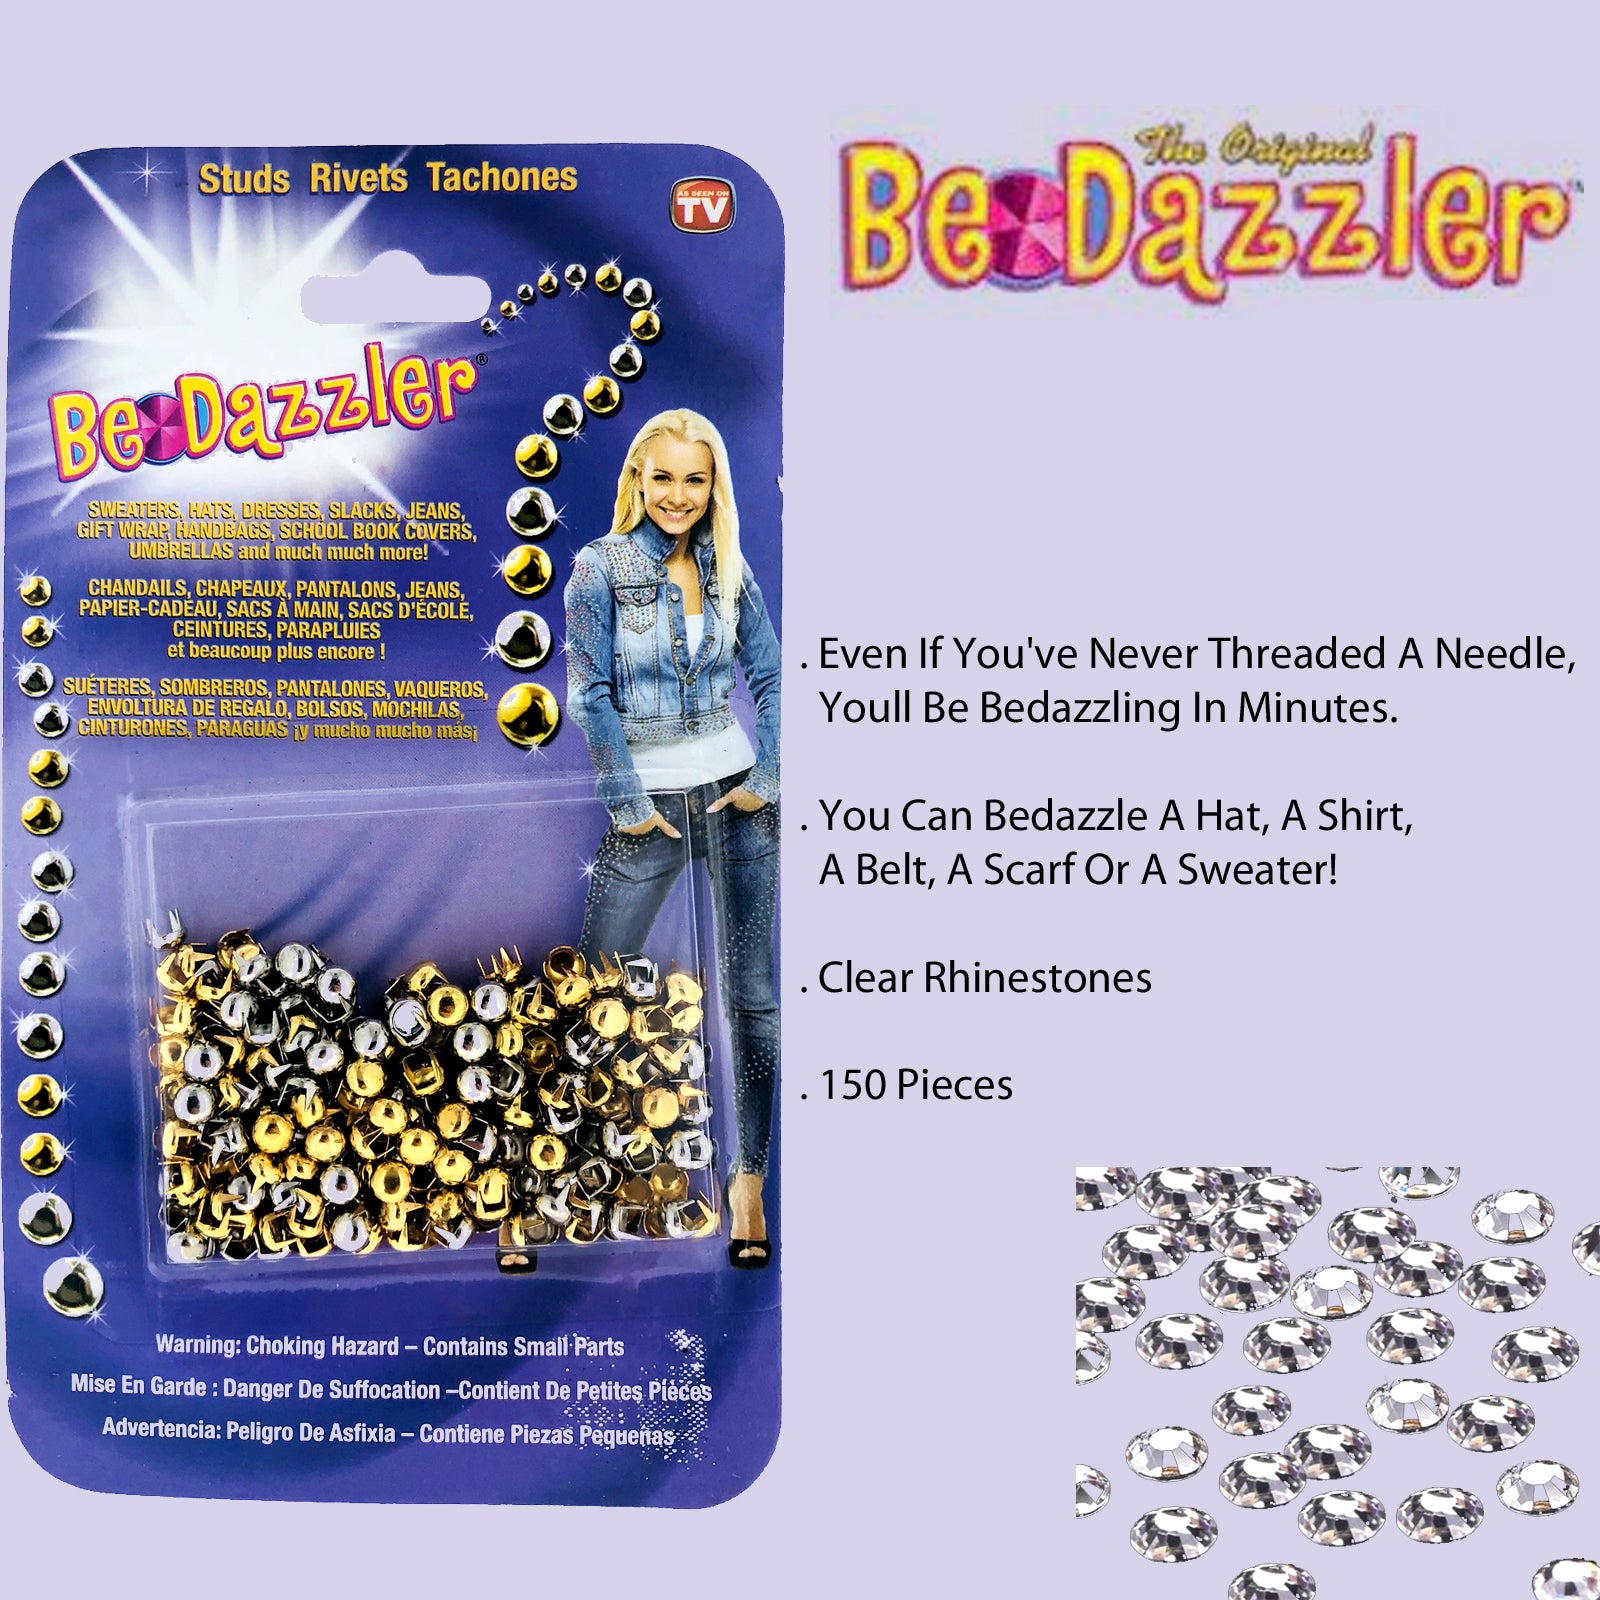 Bedazzle Dazzle Glitter – doseofjoslashes